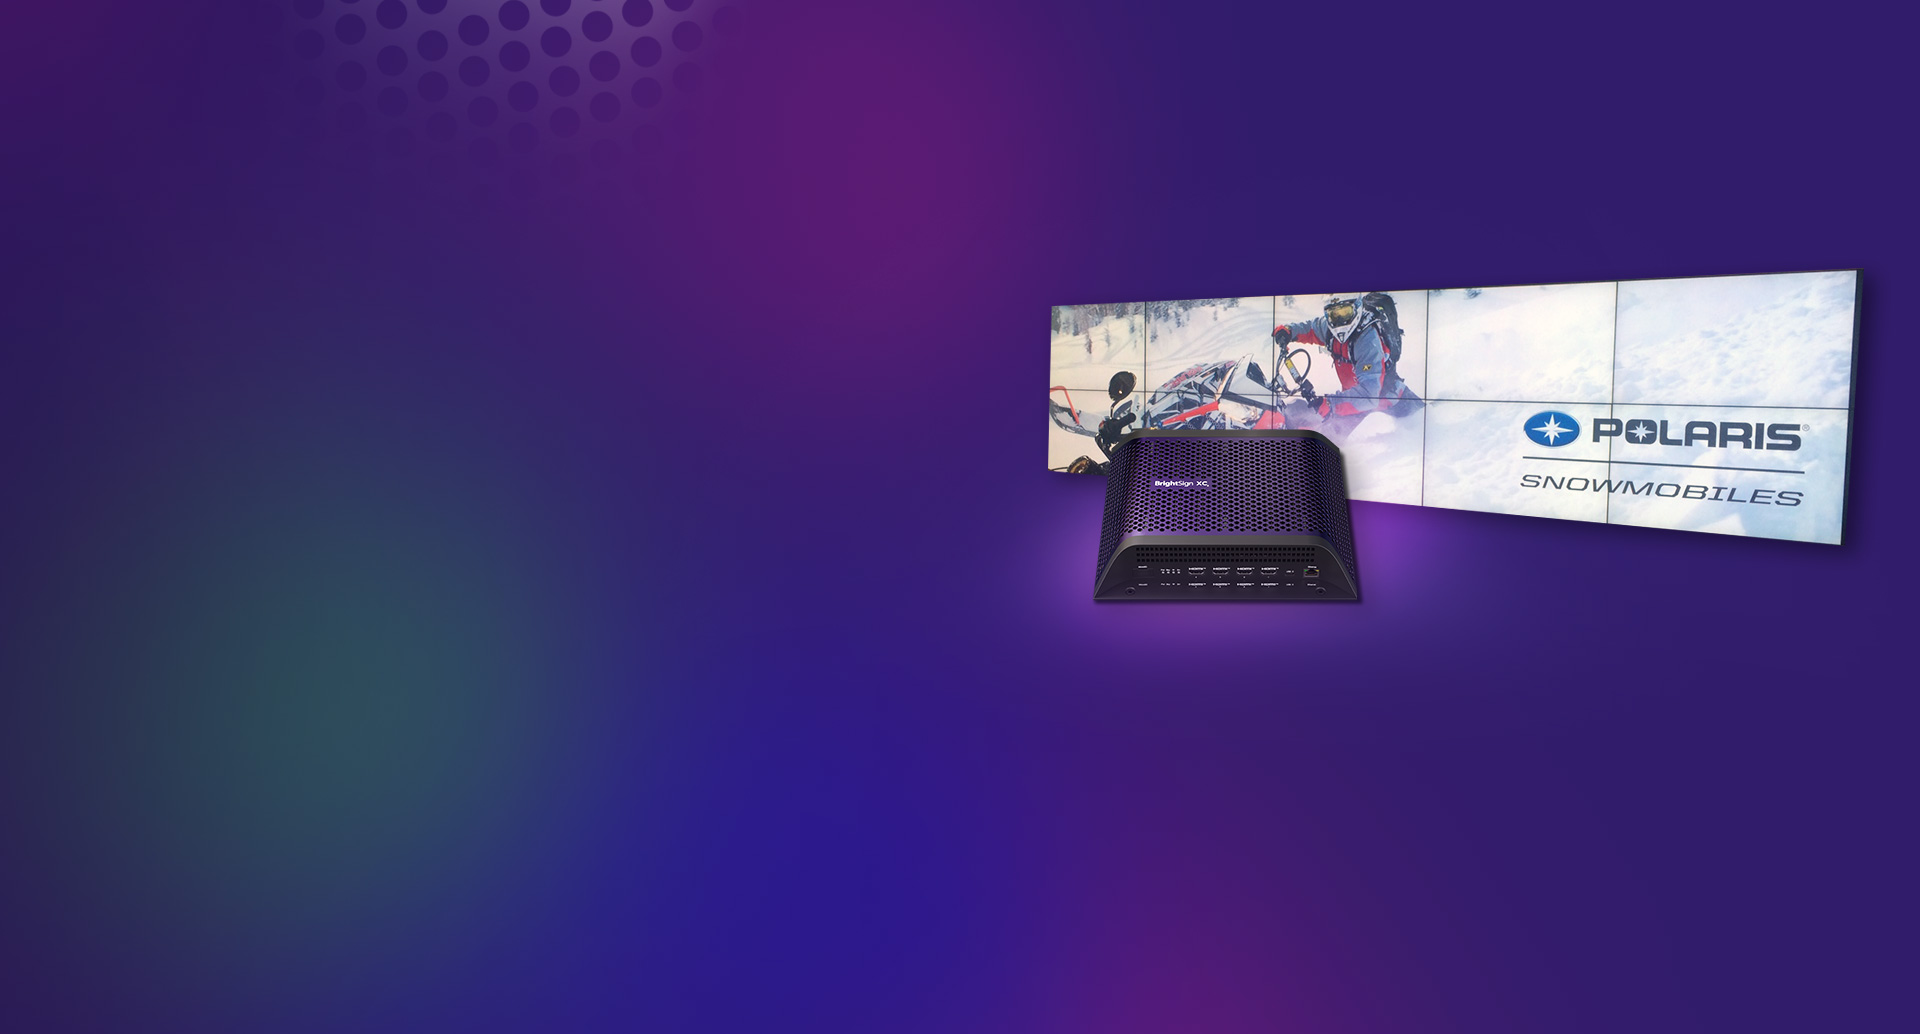 BrightSign Lettore digital signage XC5 con motoslitte Polaris visualizzate su due file di cinque schermi